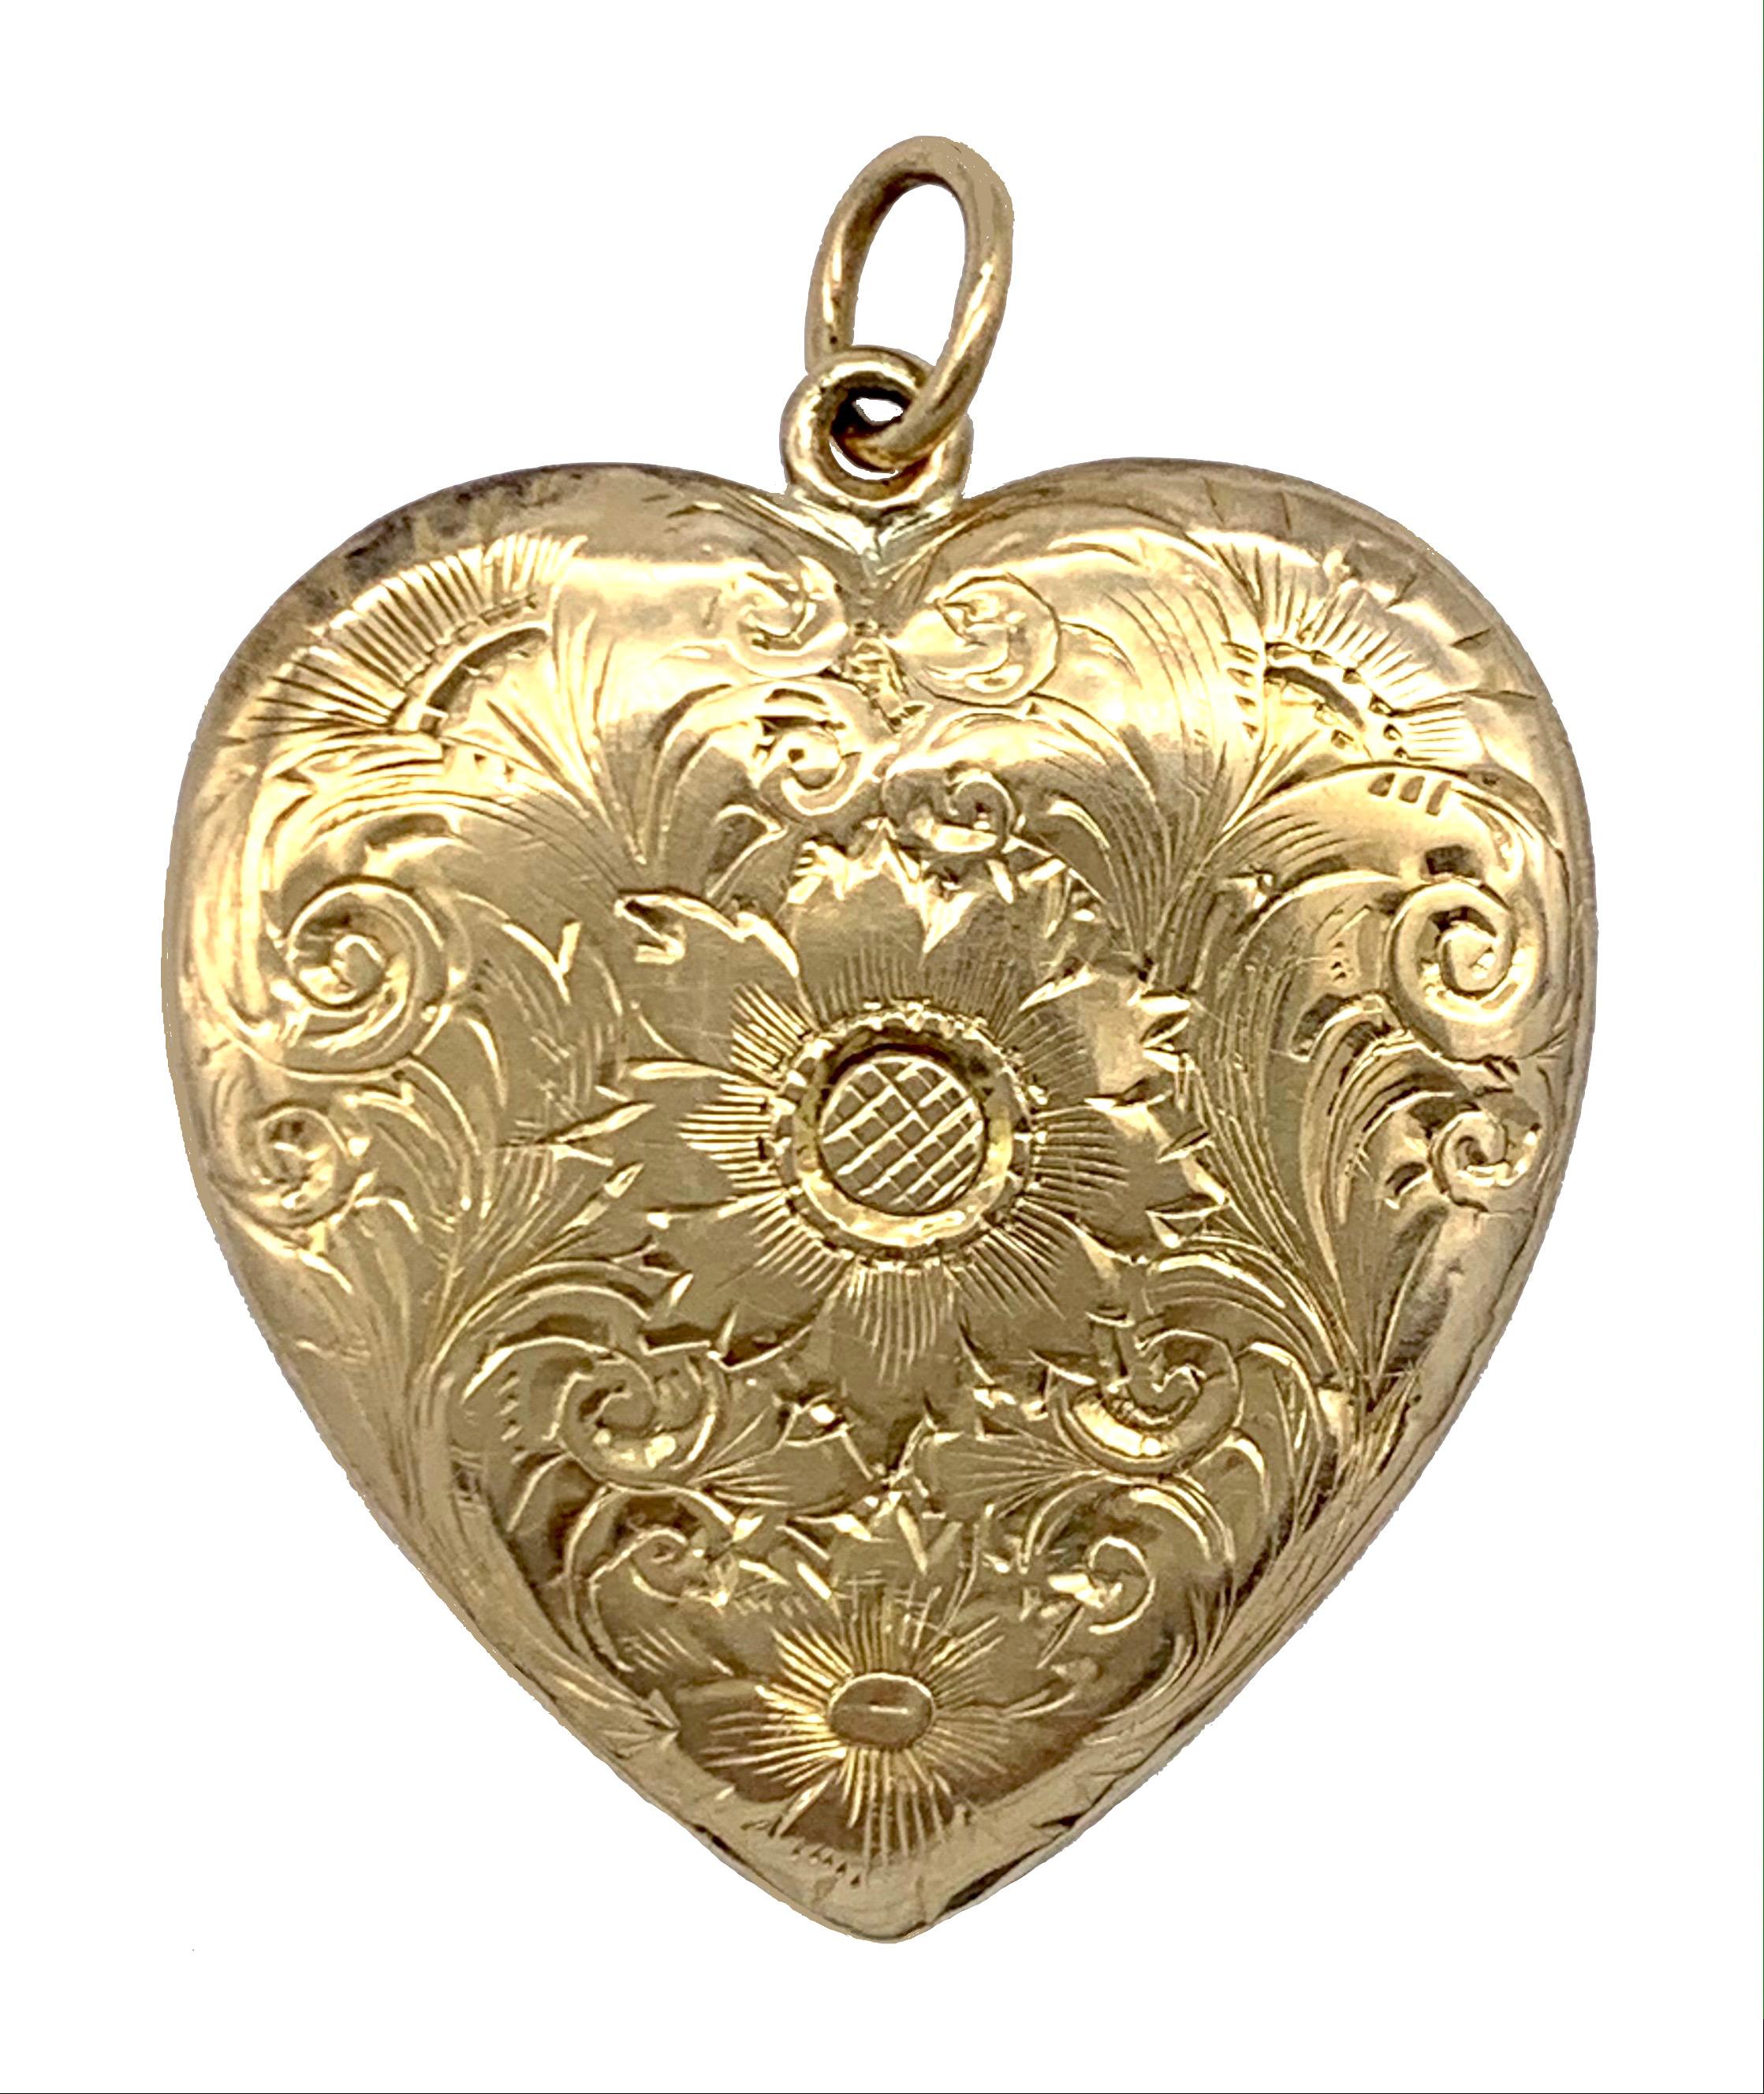 Das elegante viktorianische Herzmedaillon ist reich mit einer großen und einer kleinen Blume, vielleicht einer Sonnenblume, Disteln und Blättern auf Vorder- und Rückseite graviert. Die Blumen sind von einem schönen Rankenwerk umgeben, das das